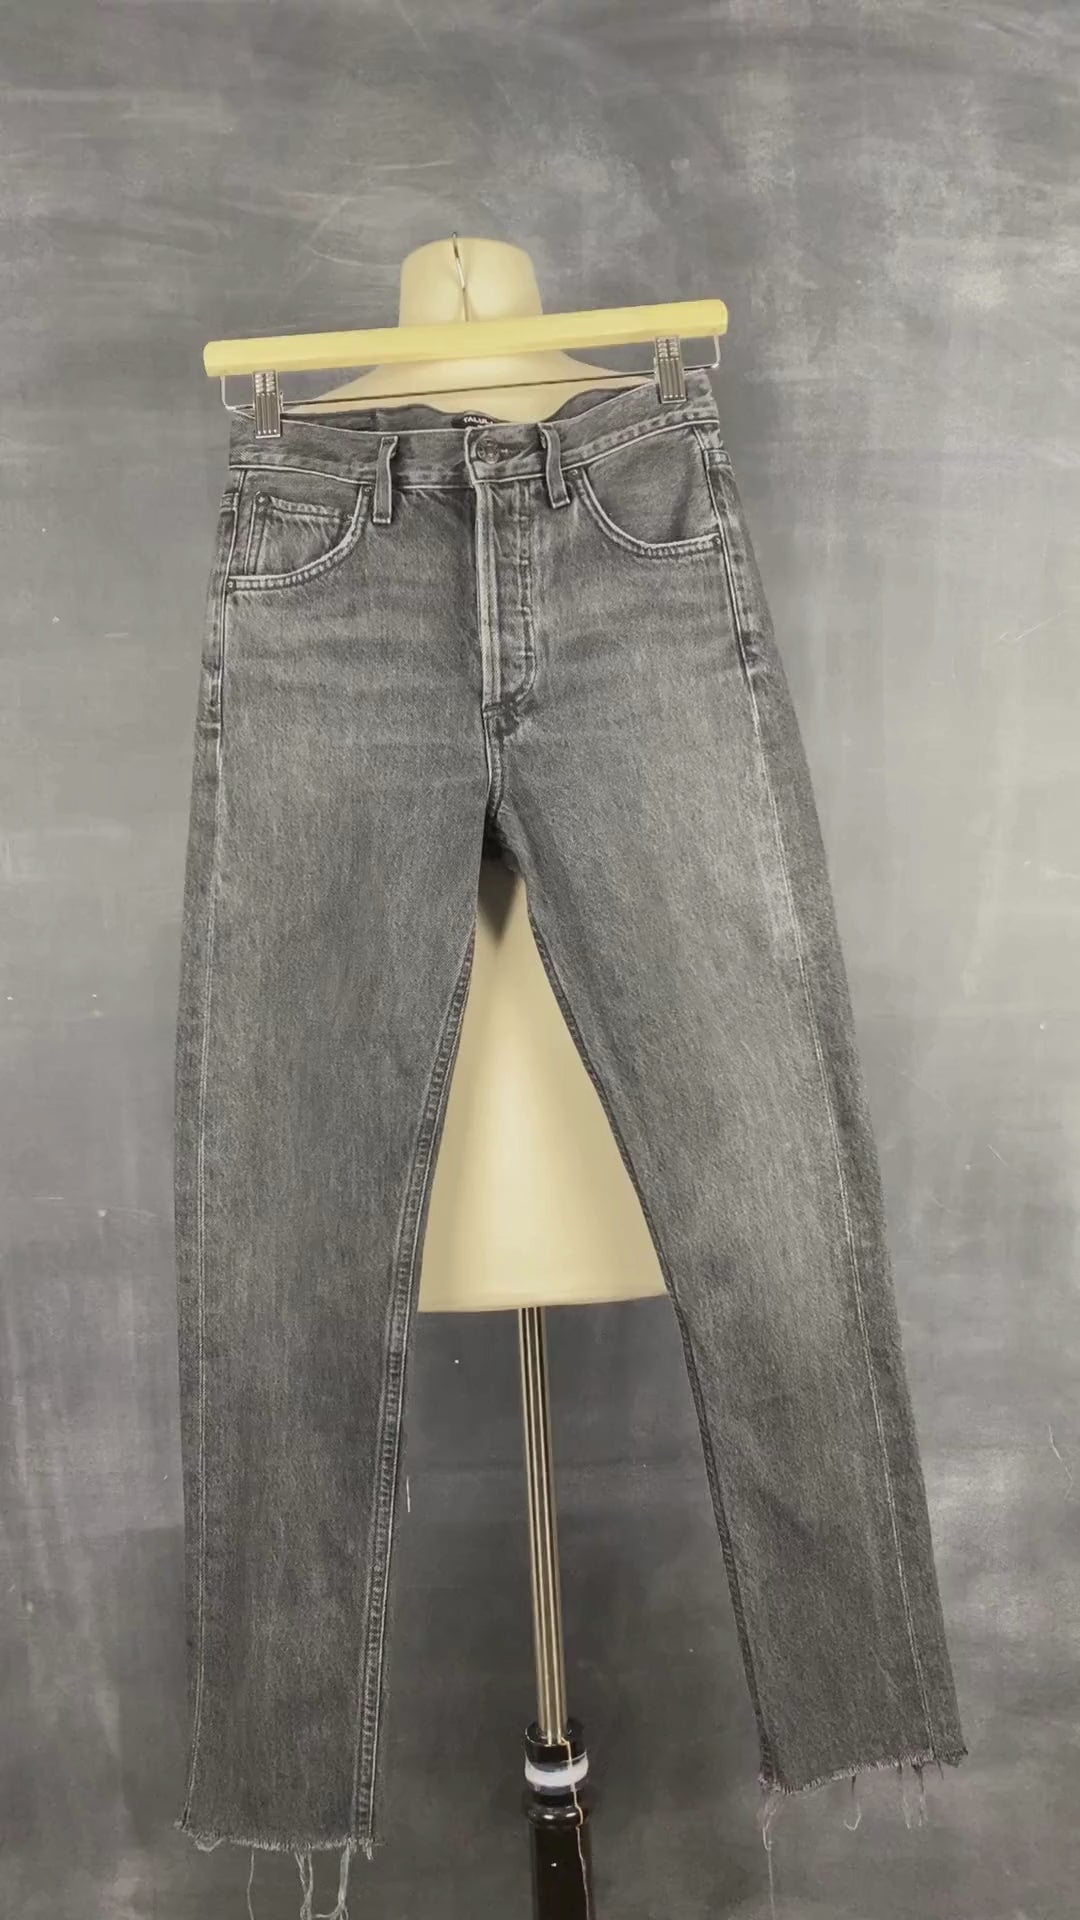 Jeans noir délavé à jambe étroite Agolde x Talula, taille 23. Vue de la vidéo qui présente tous les détails du jeans.